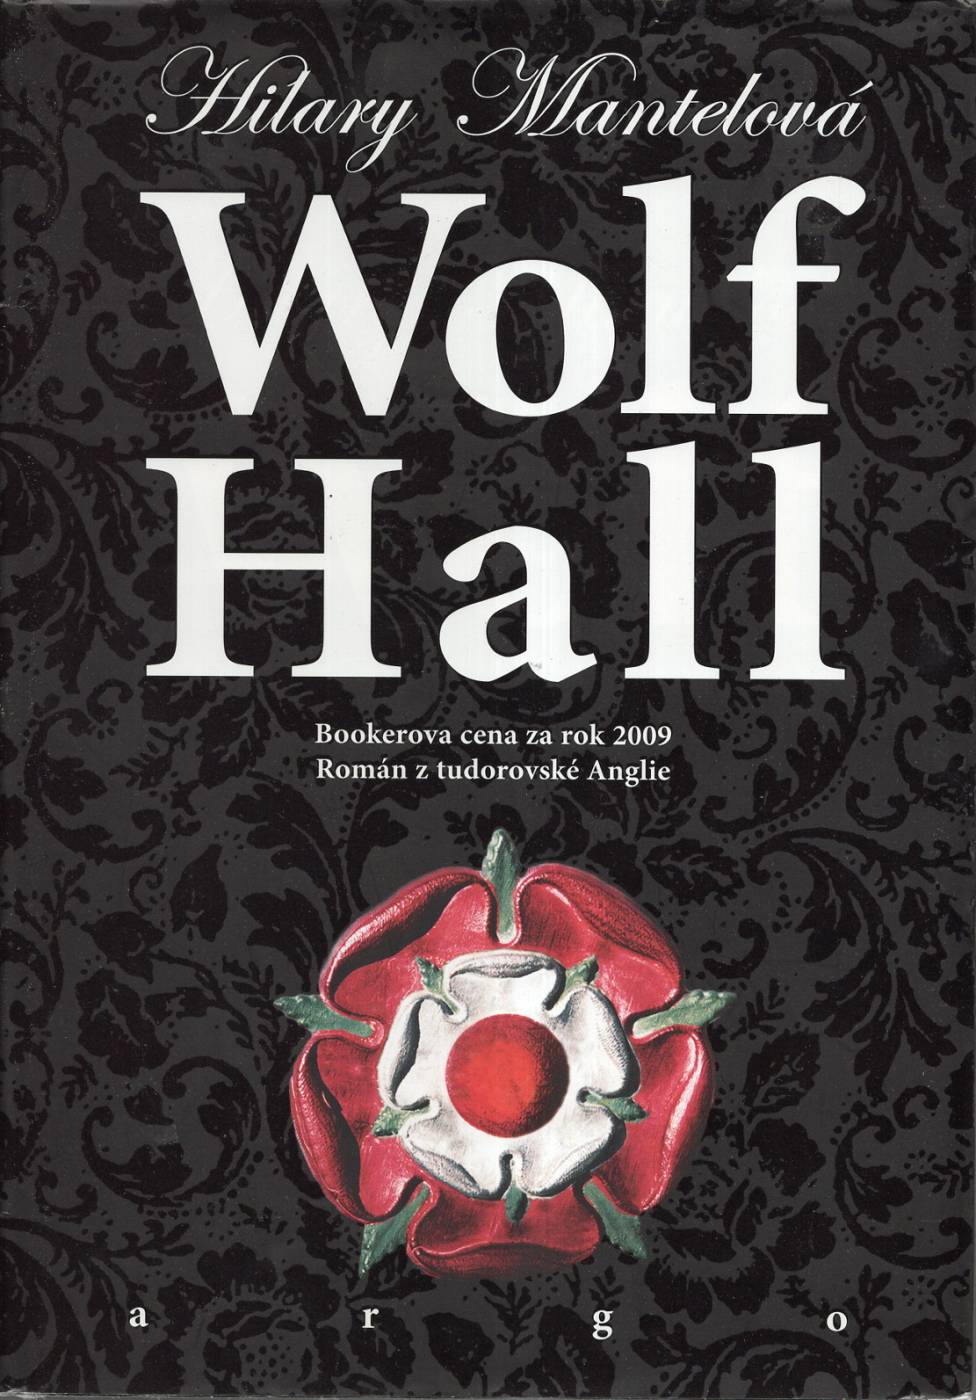 Mantelová, Hilary – Wolf Hall, Román z tudorovské Anglie